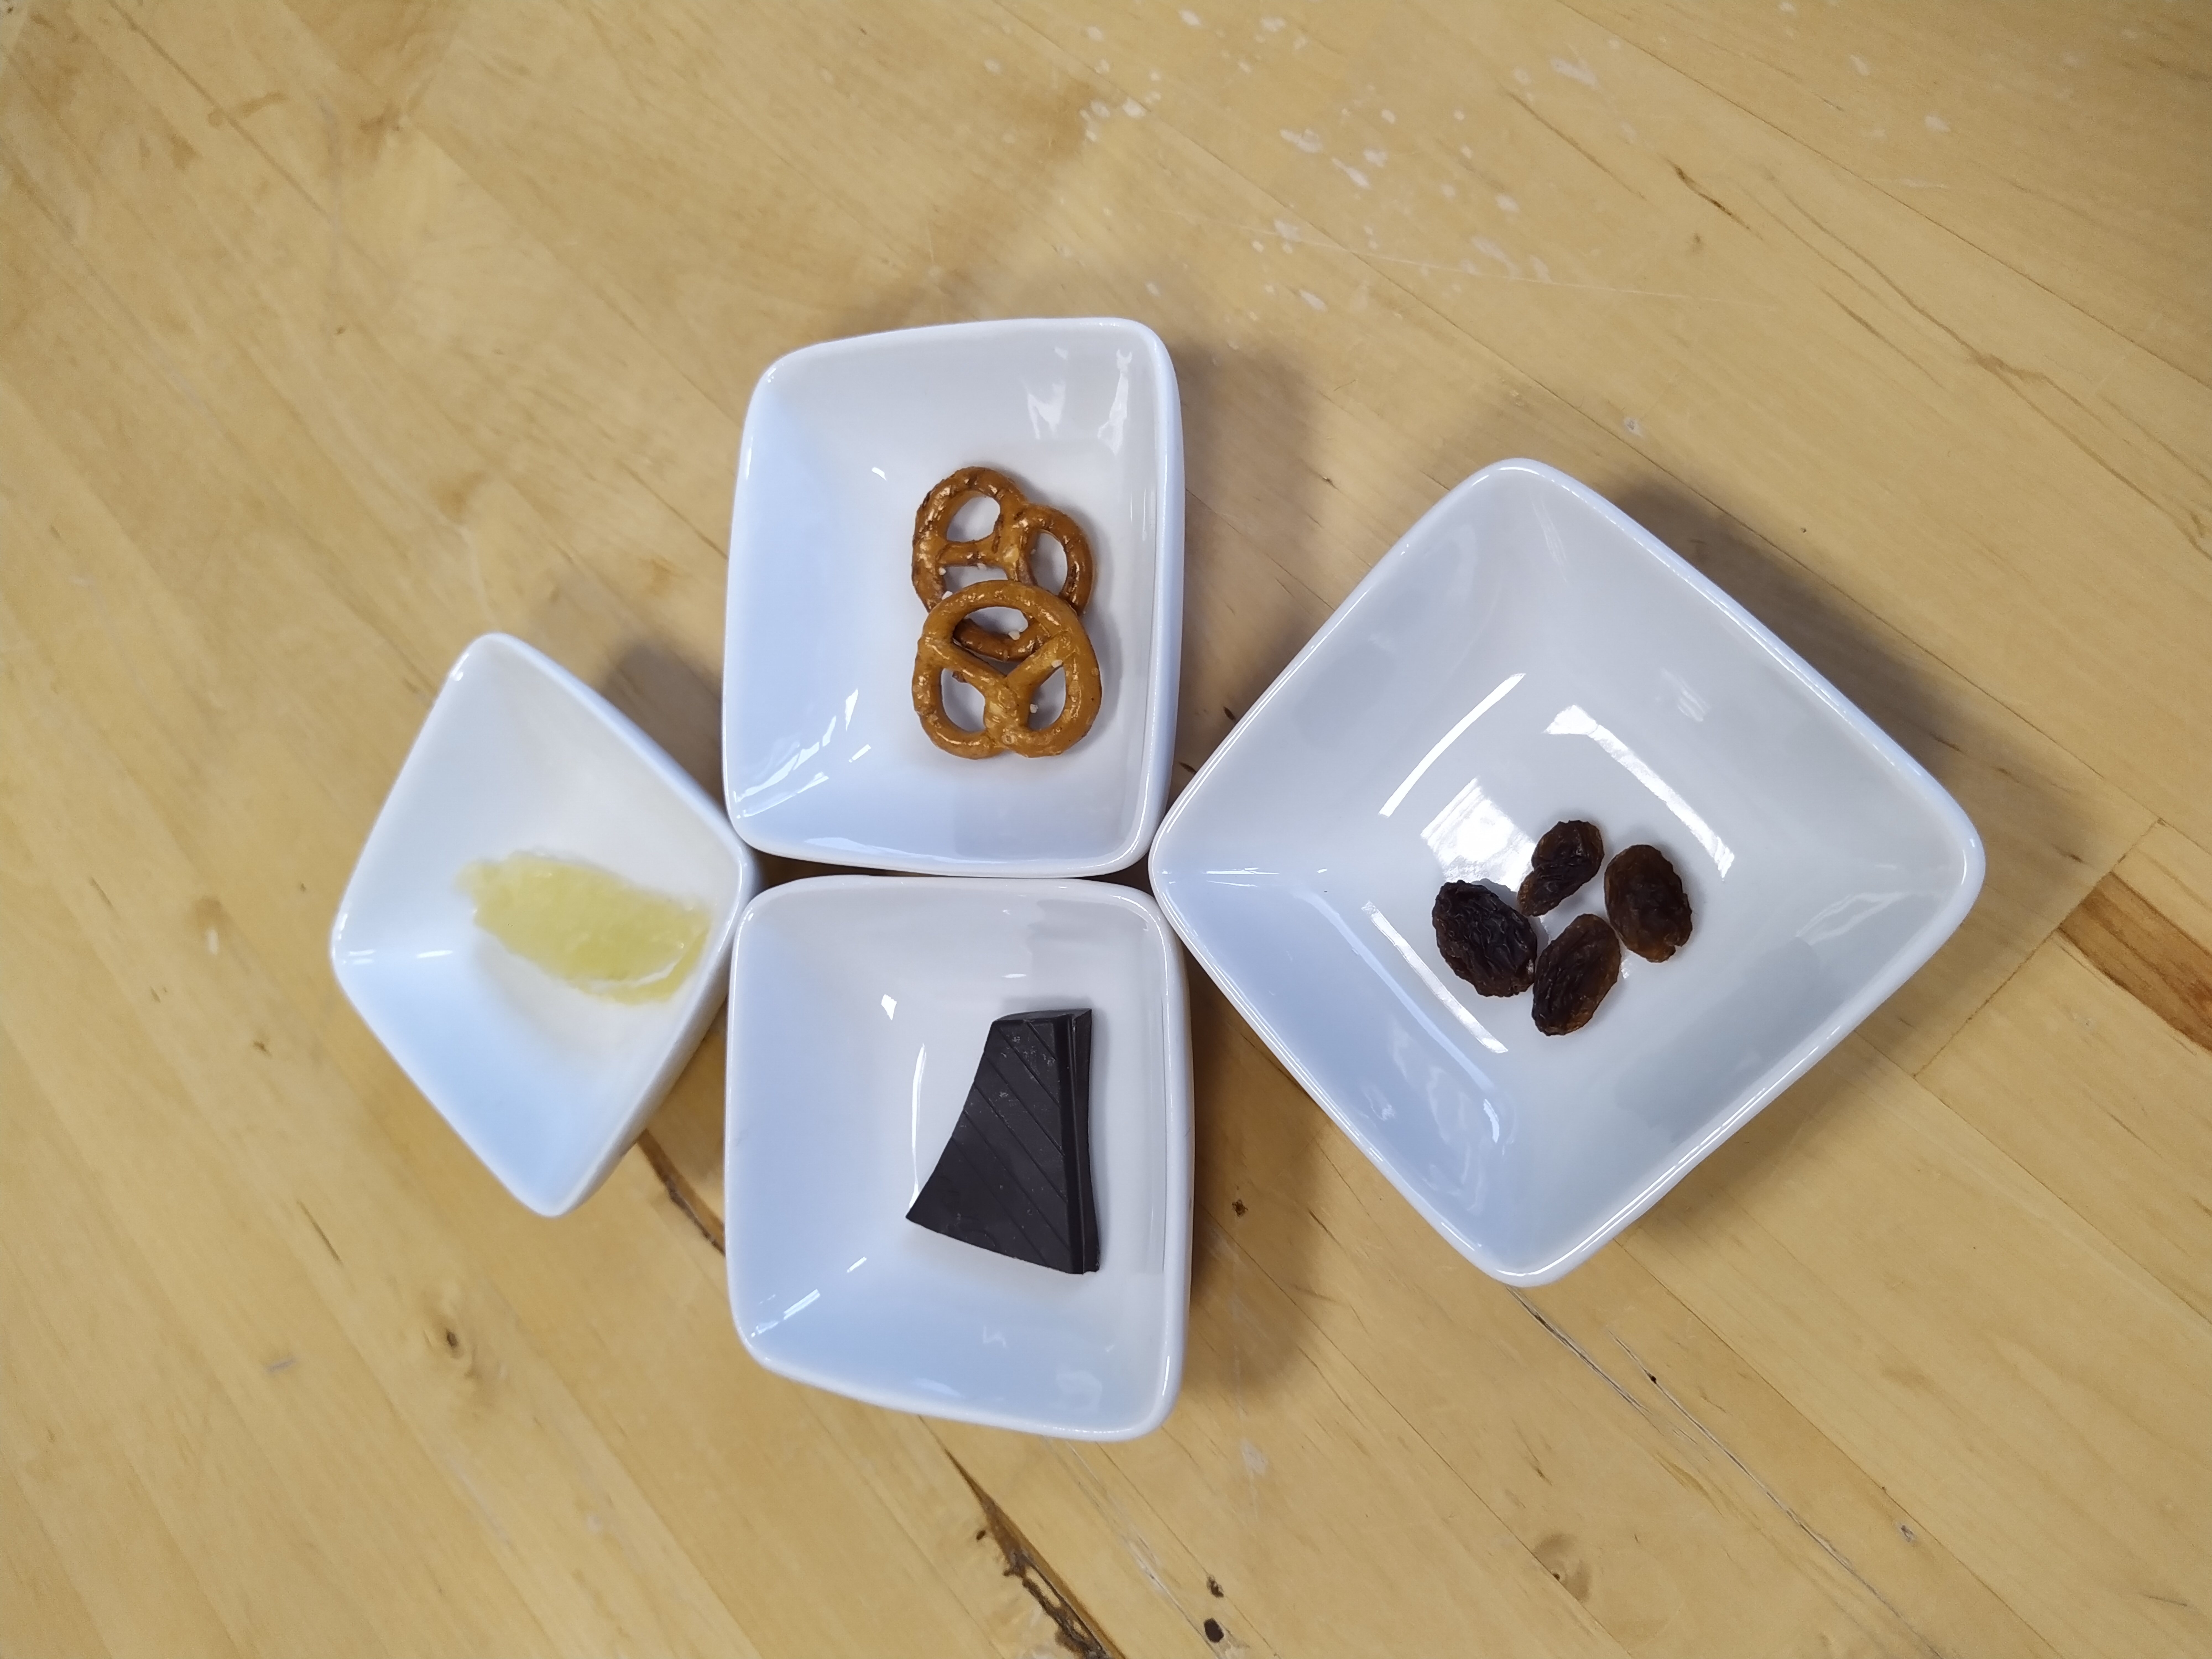 Table 1 – Le goût
Sur la table, disposer la fiche consigne « le sens du Goût » ainsi que les 4 aliments choisis : un à la saveur acide, un à la saveur sucrée, un à la saveur salée et un à la saveur amer.
 
Exemple
Assiette 1—saveur acide : bonbons acidulés
Assiette 2—saveur sucrée: sucre candy
Assiette 3—saveur amer : chocolat noir à 85 % de cacao
Assiette 4—saveur salé : pipas
 
Astuce : découper les aliments en petits morceaux et les rendre disponibles en quantité suffisante afin que tous les participants puissent y goûter.
